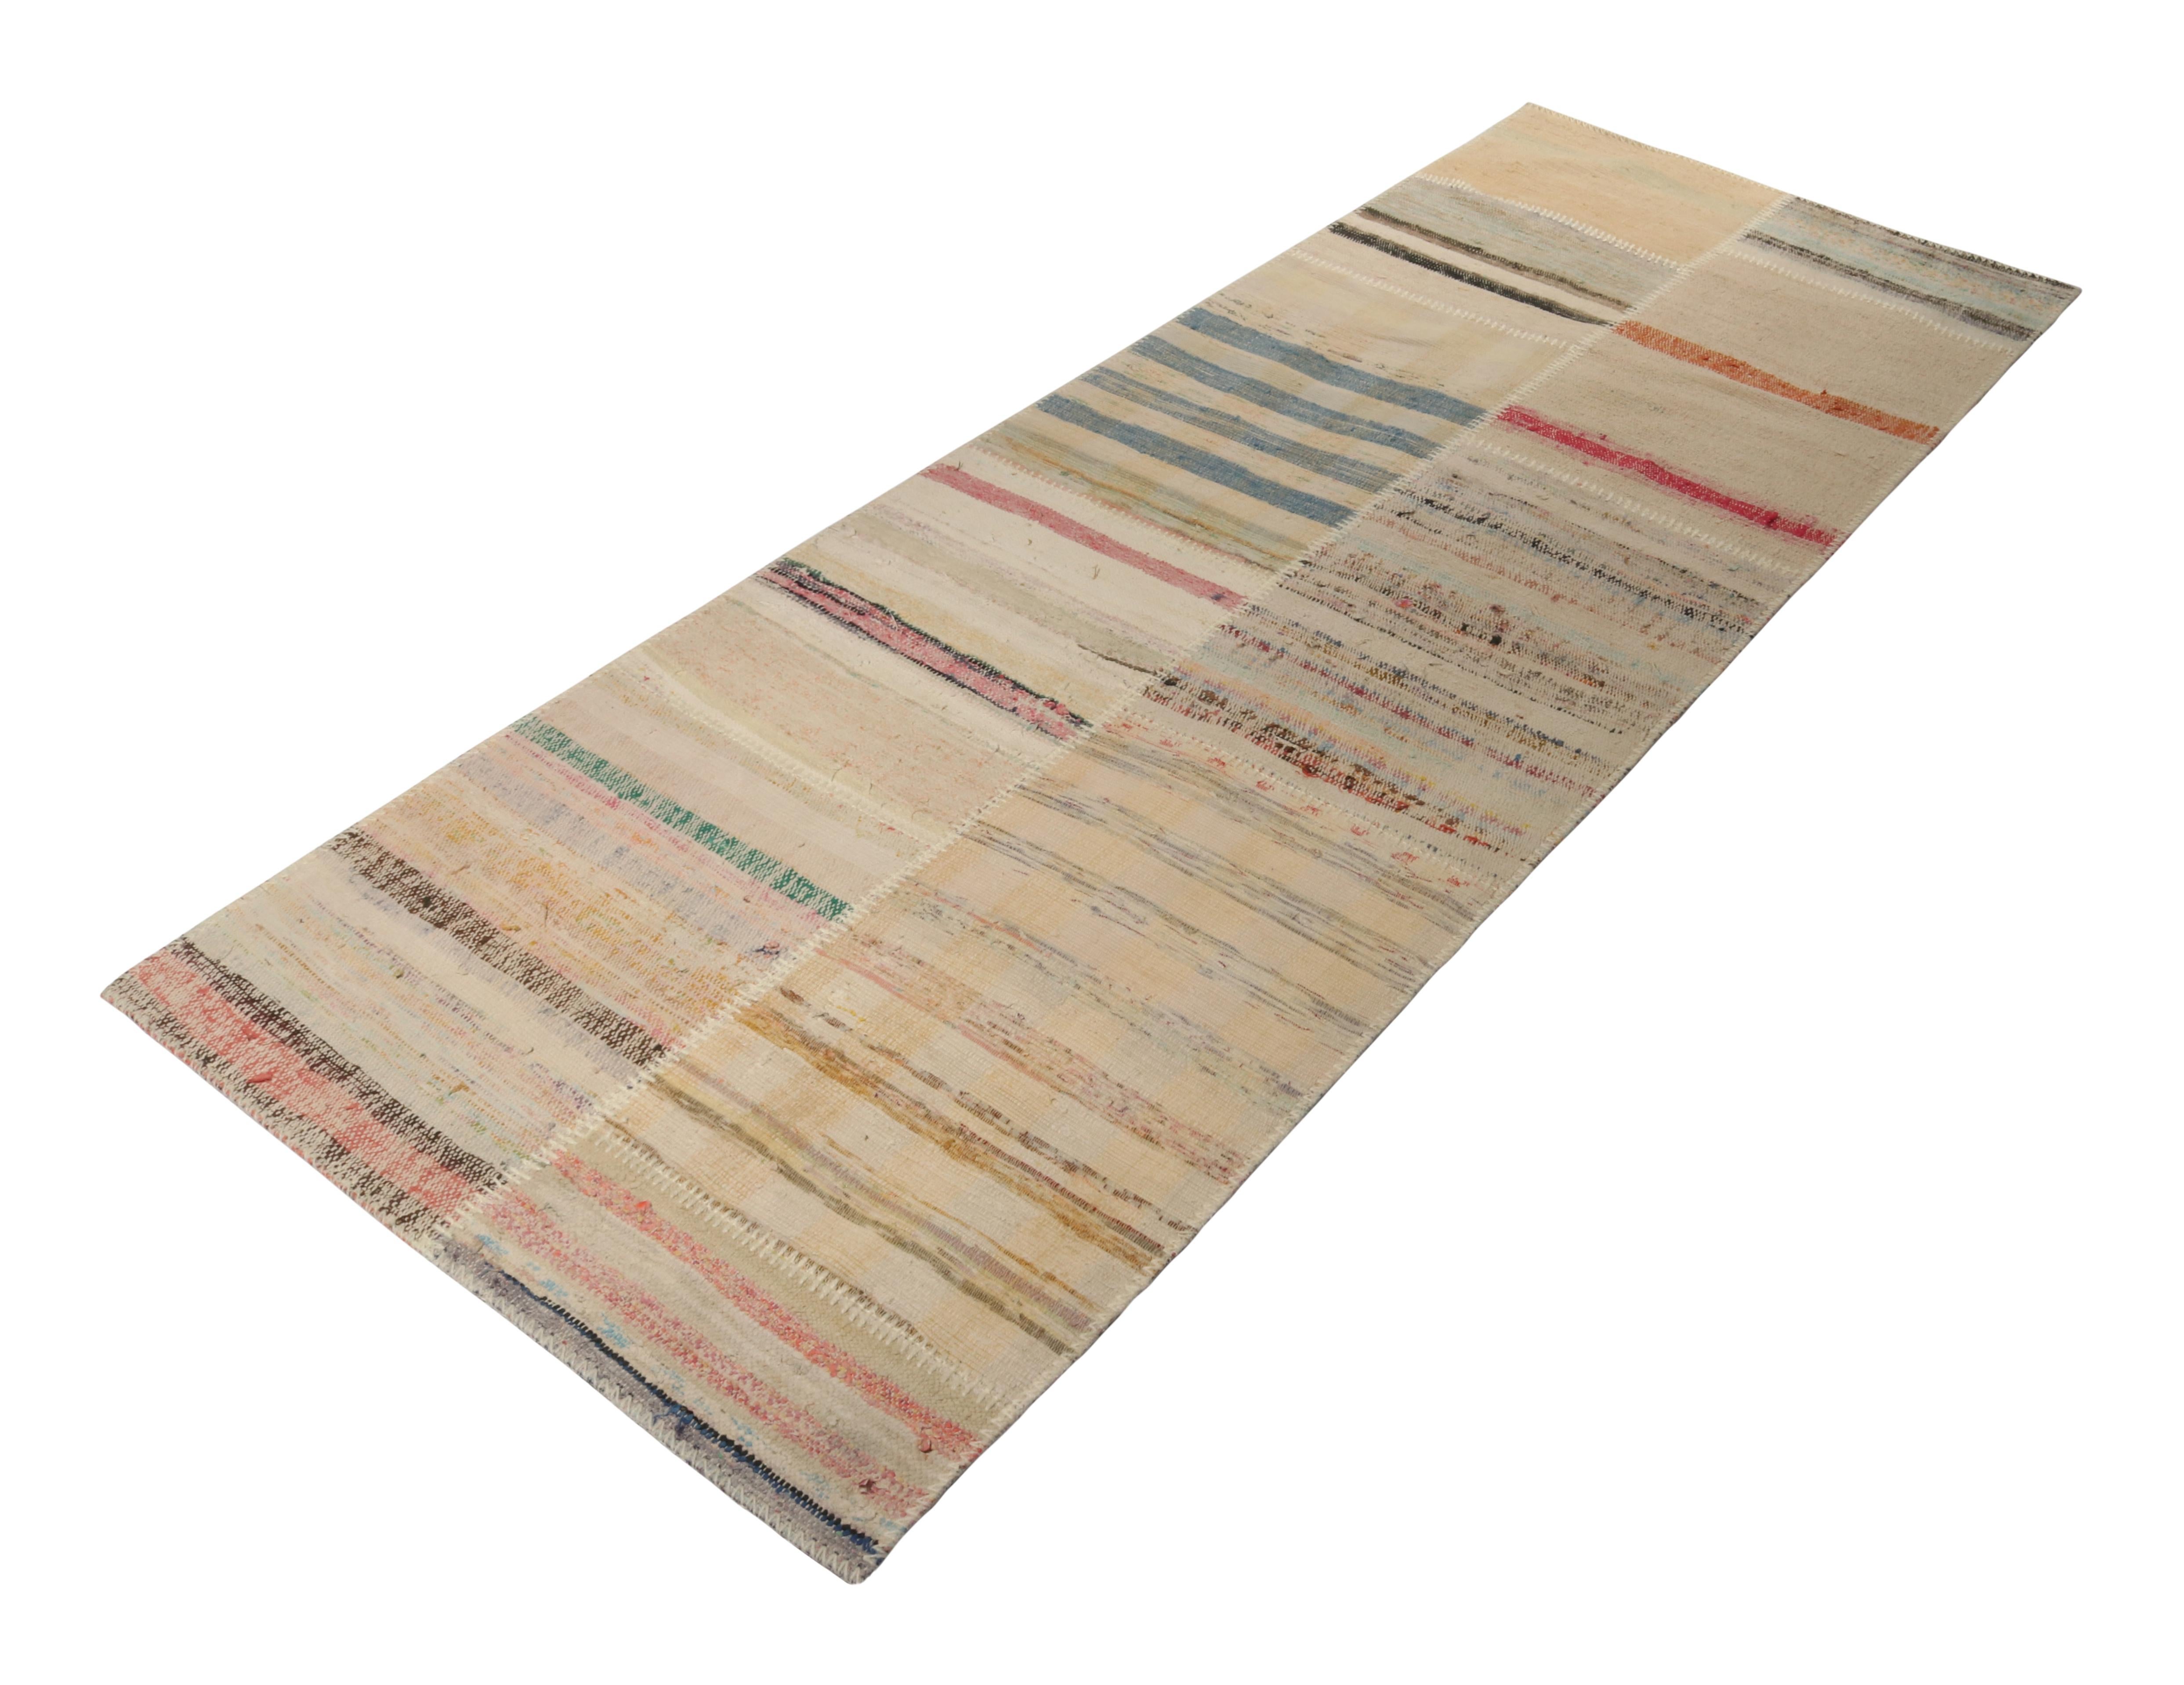 Tissé à la main en laine, Rug & Kilim présente un tapis de course contemporain 3x8 issu de sa nouvelle collection innovante de kilim en patchwork. 

Sur le design : 

Cette technique de tissage à plat réutilise des fils vintage dans des rayures